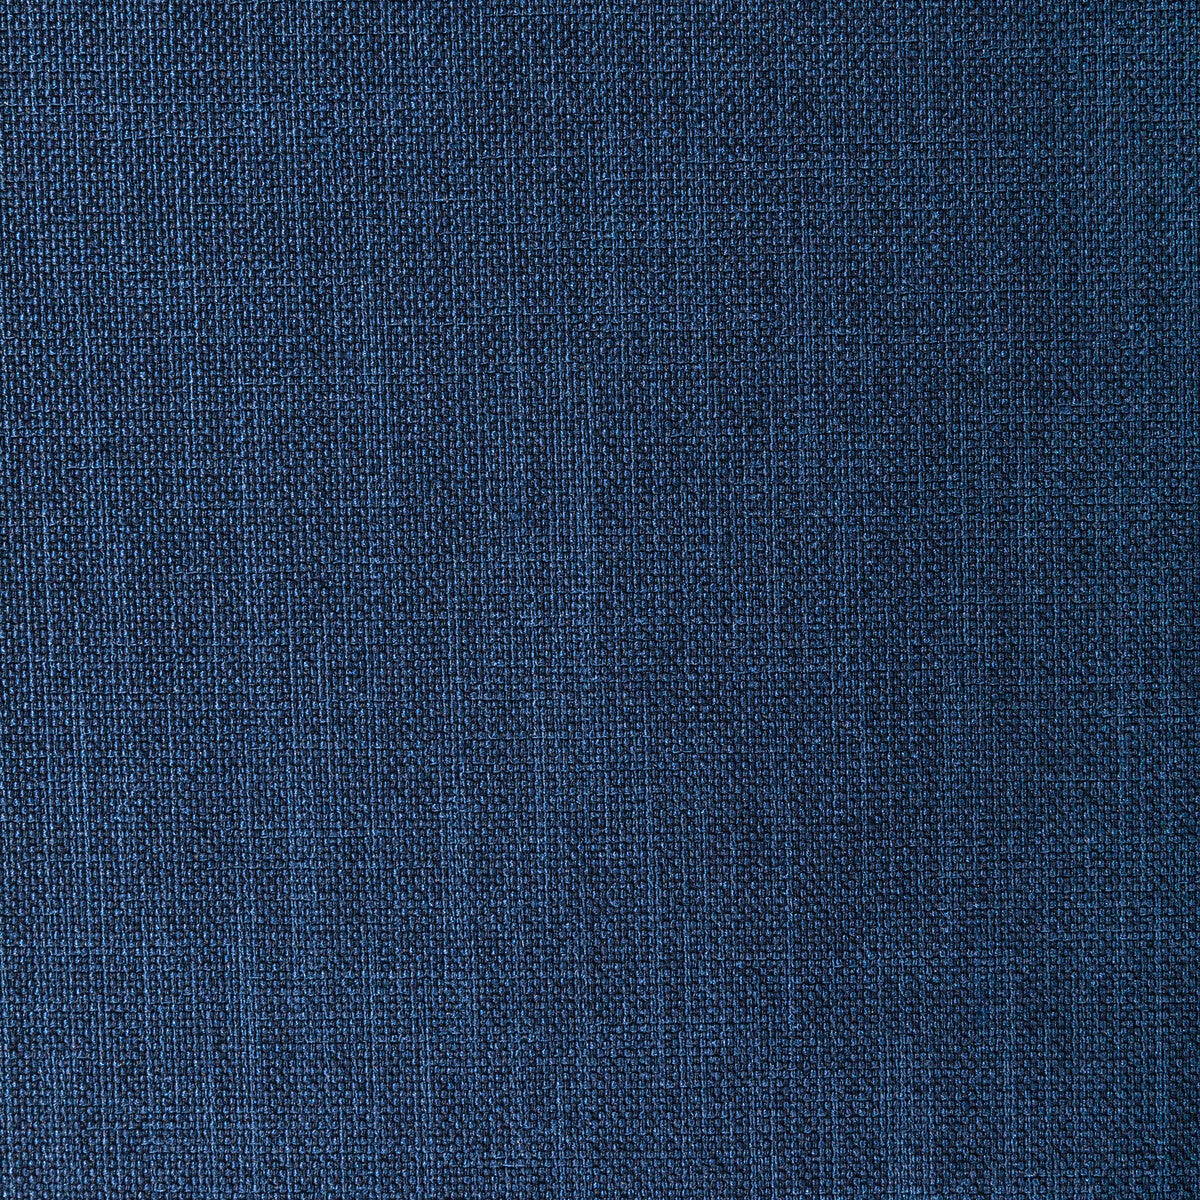 Kravet Basics fabric in 33120-50 color - pattern 33120.50.0 - by Kravet Basics